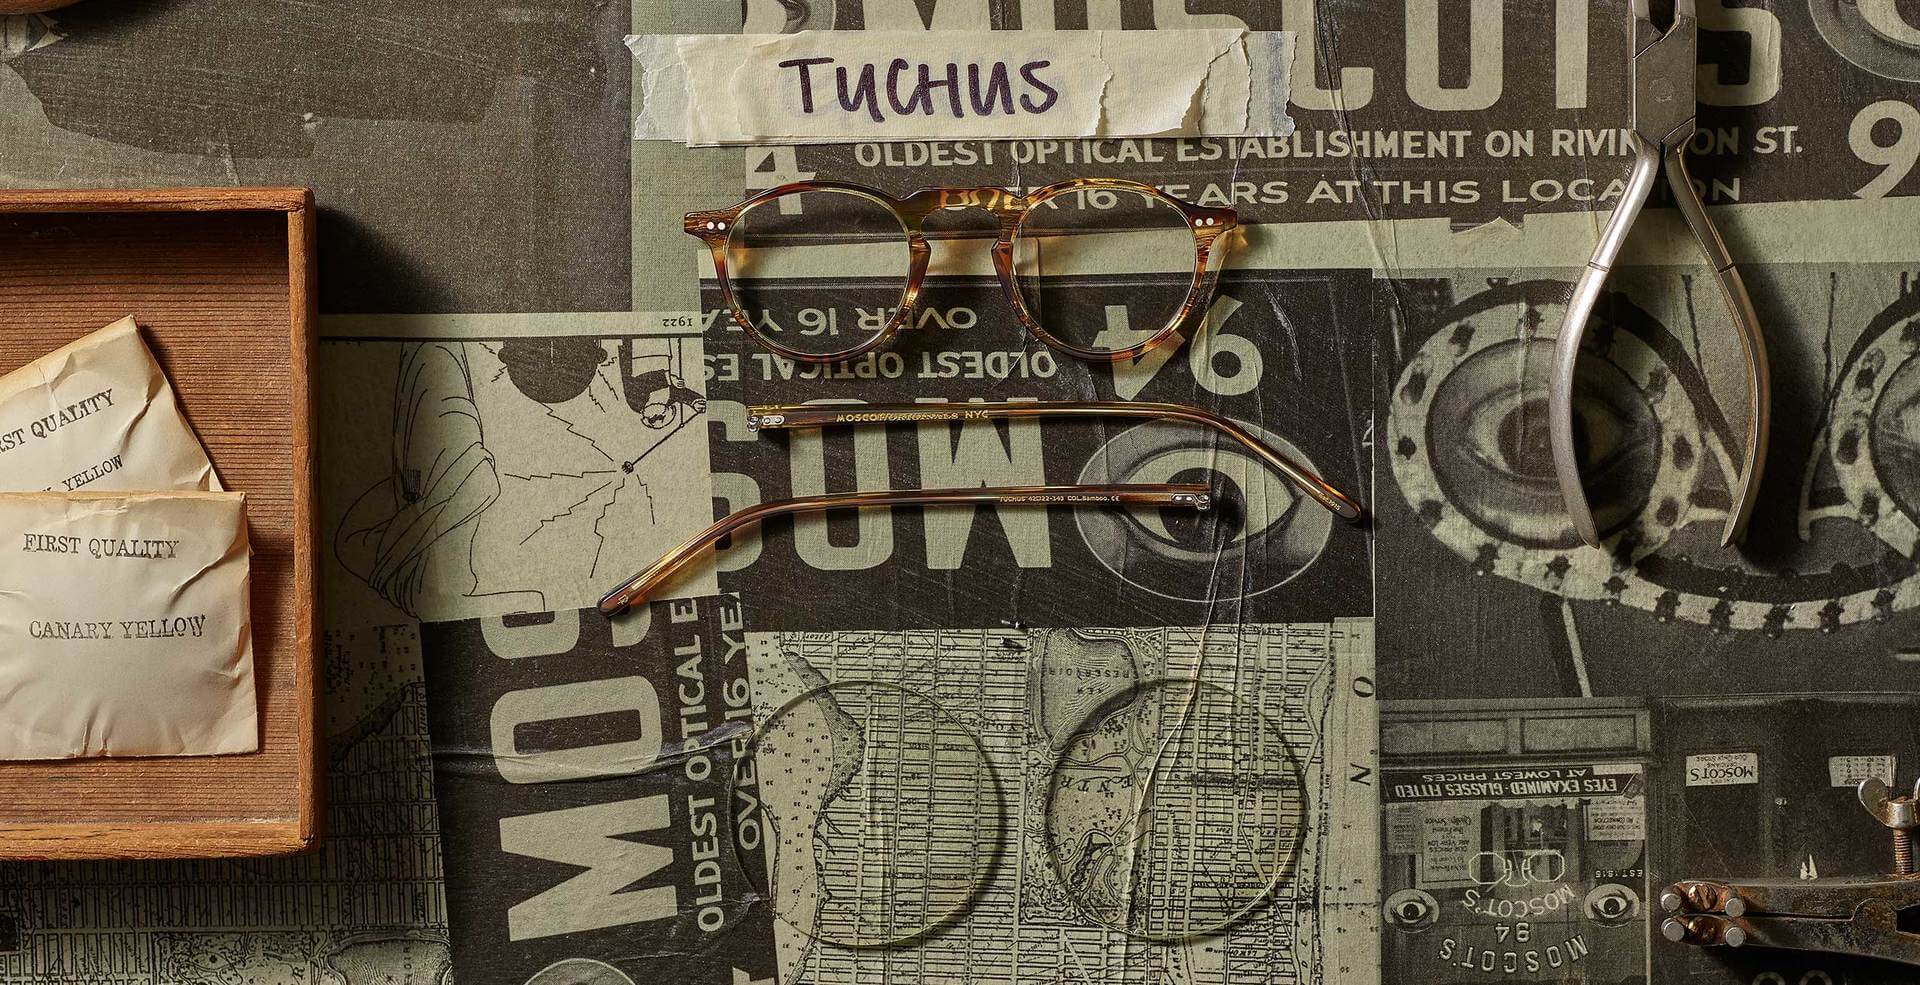 The TUCHUS